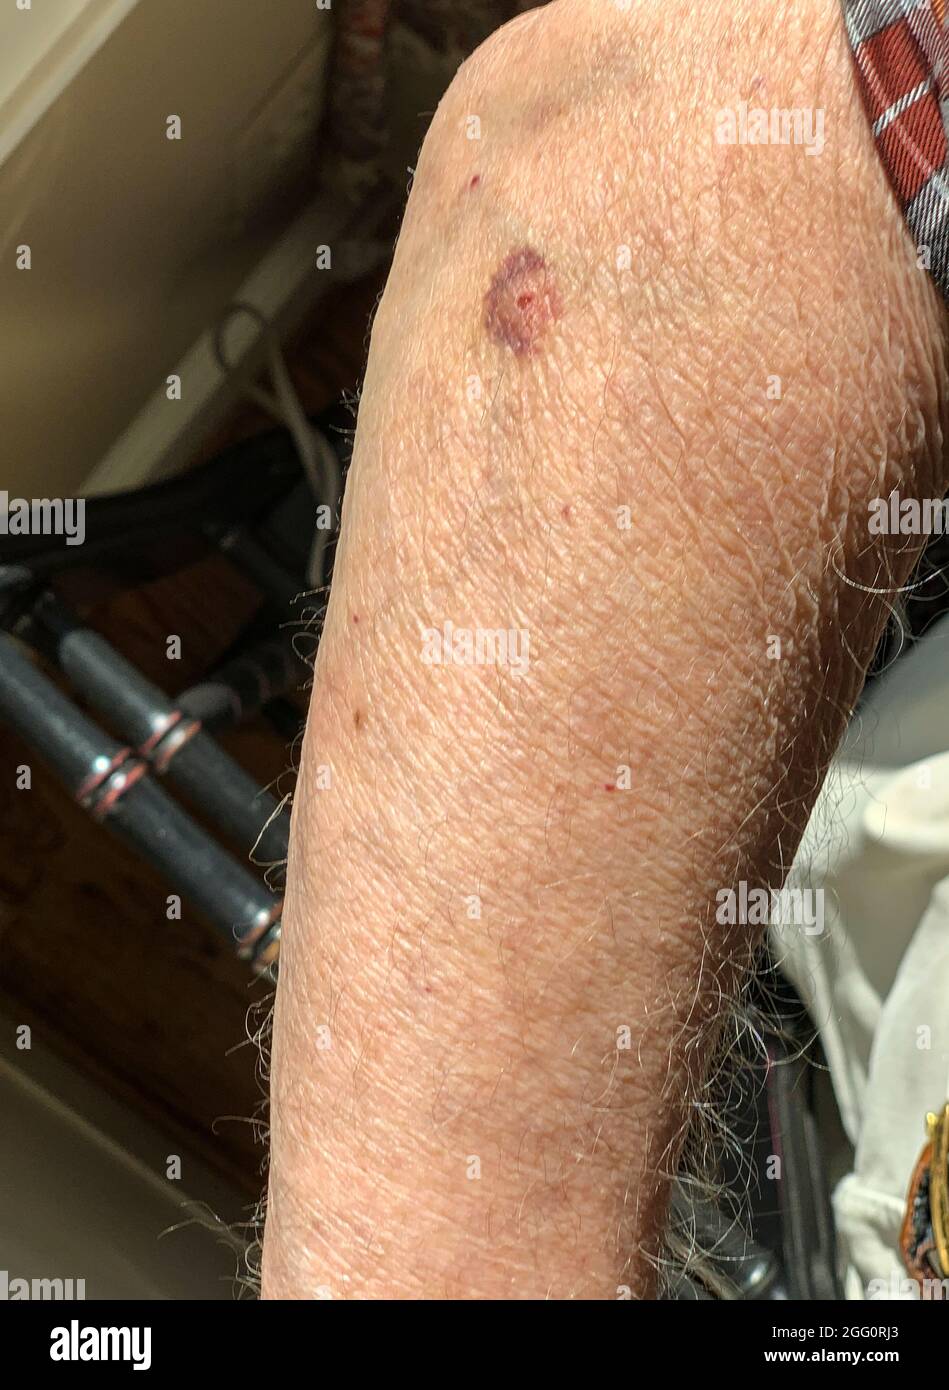 Éruption de la cible sur le bras supérieur, signe de la maladie de Lyme. Banque D'Images